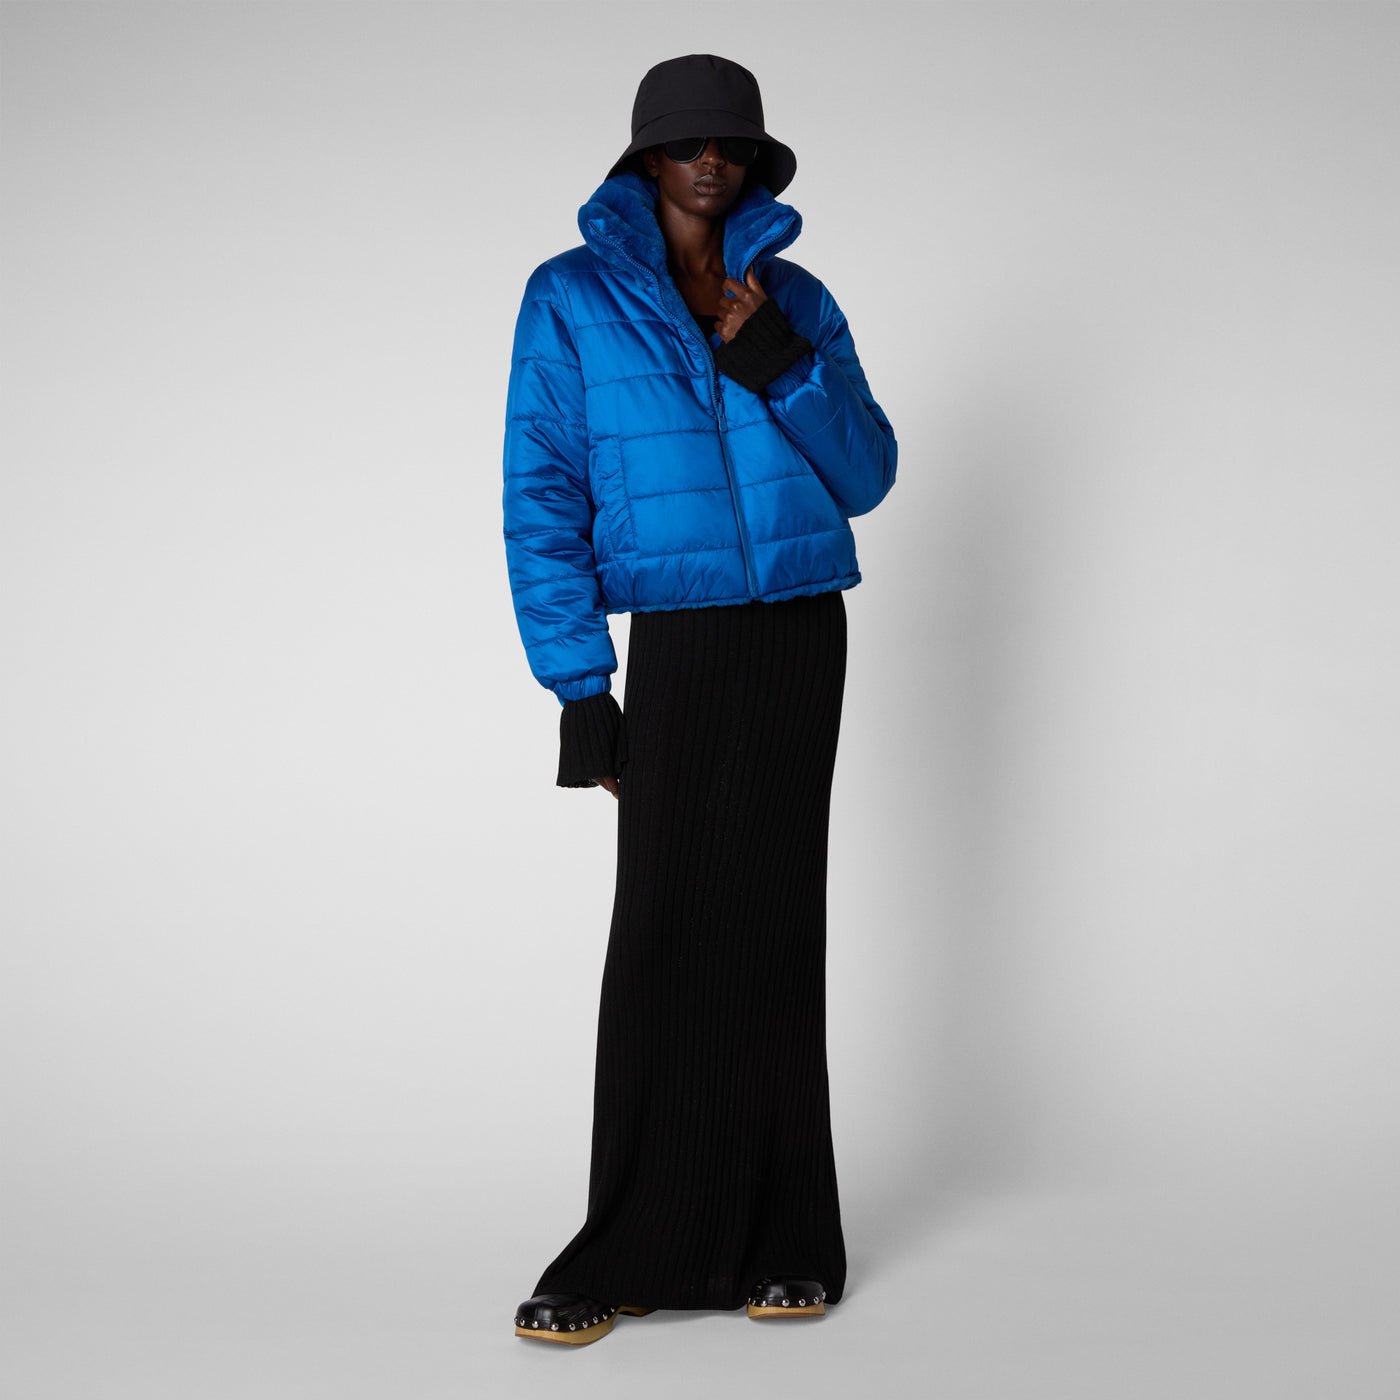 Women's Jeon Reversible Faux Fur Jacket in Blue Berry